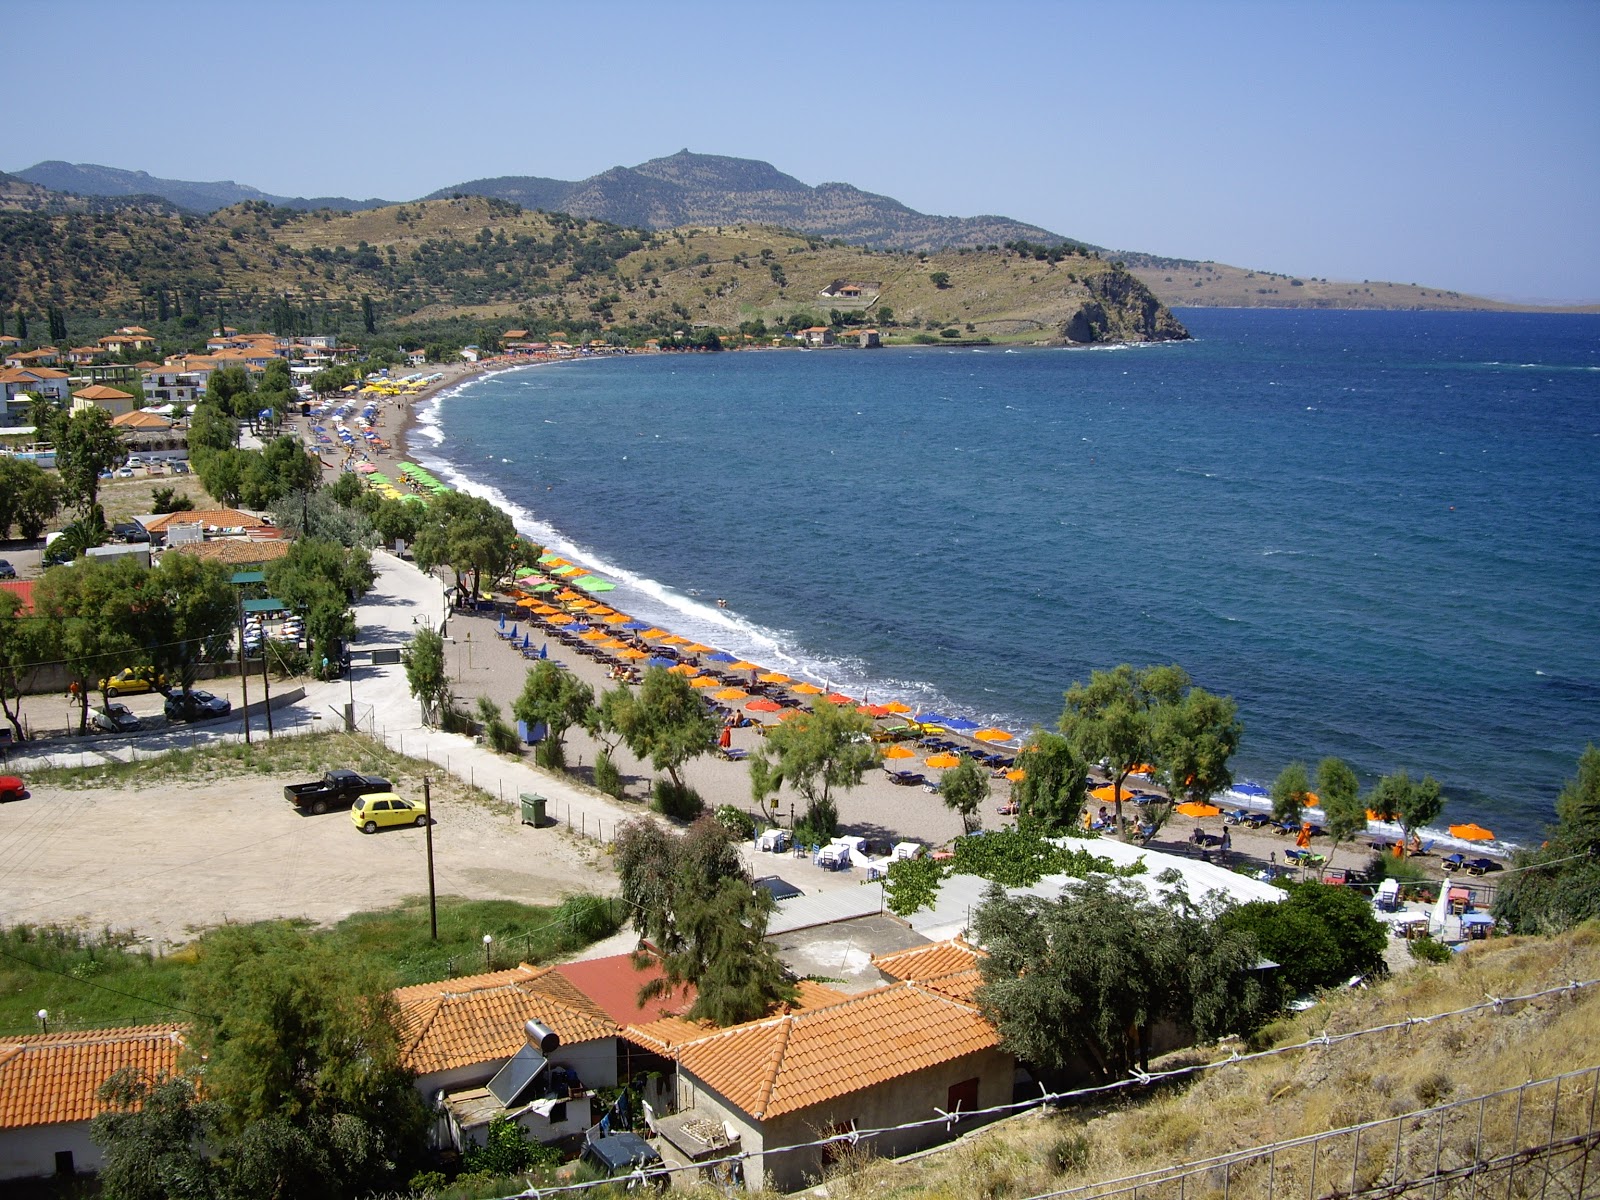 Anaxos Plajı'in fotoğrafı parlak kum yüzey ile